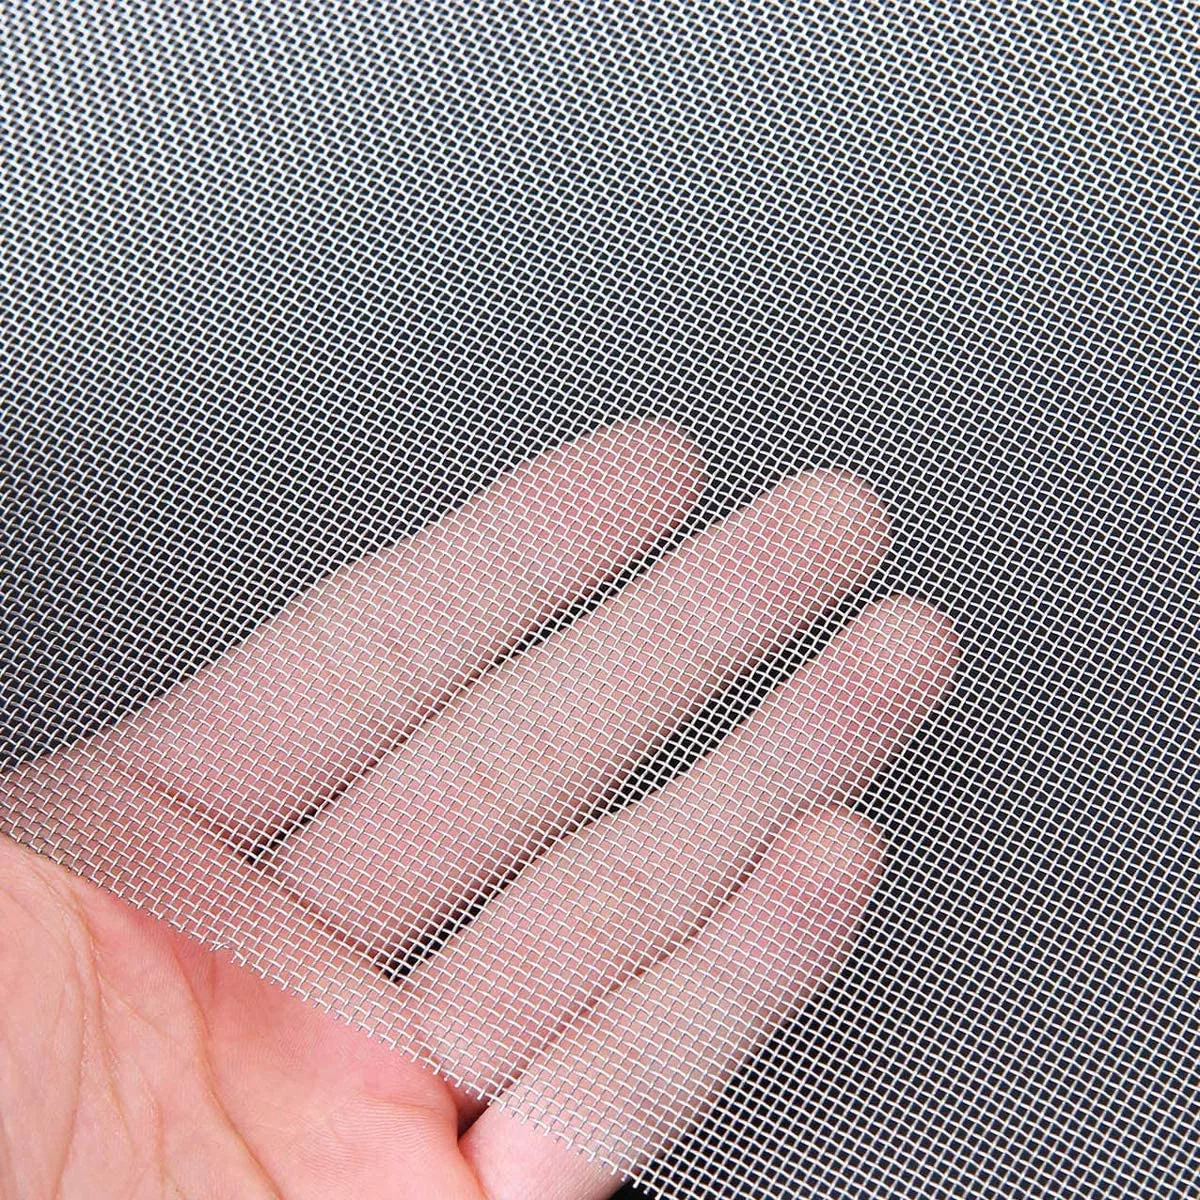 La extrusora Personalizado de fábrica de tejidos de malla metálica filtro filtro de acero inoxidable pantalla Disco